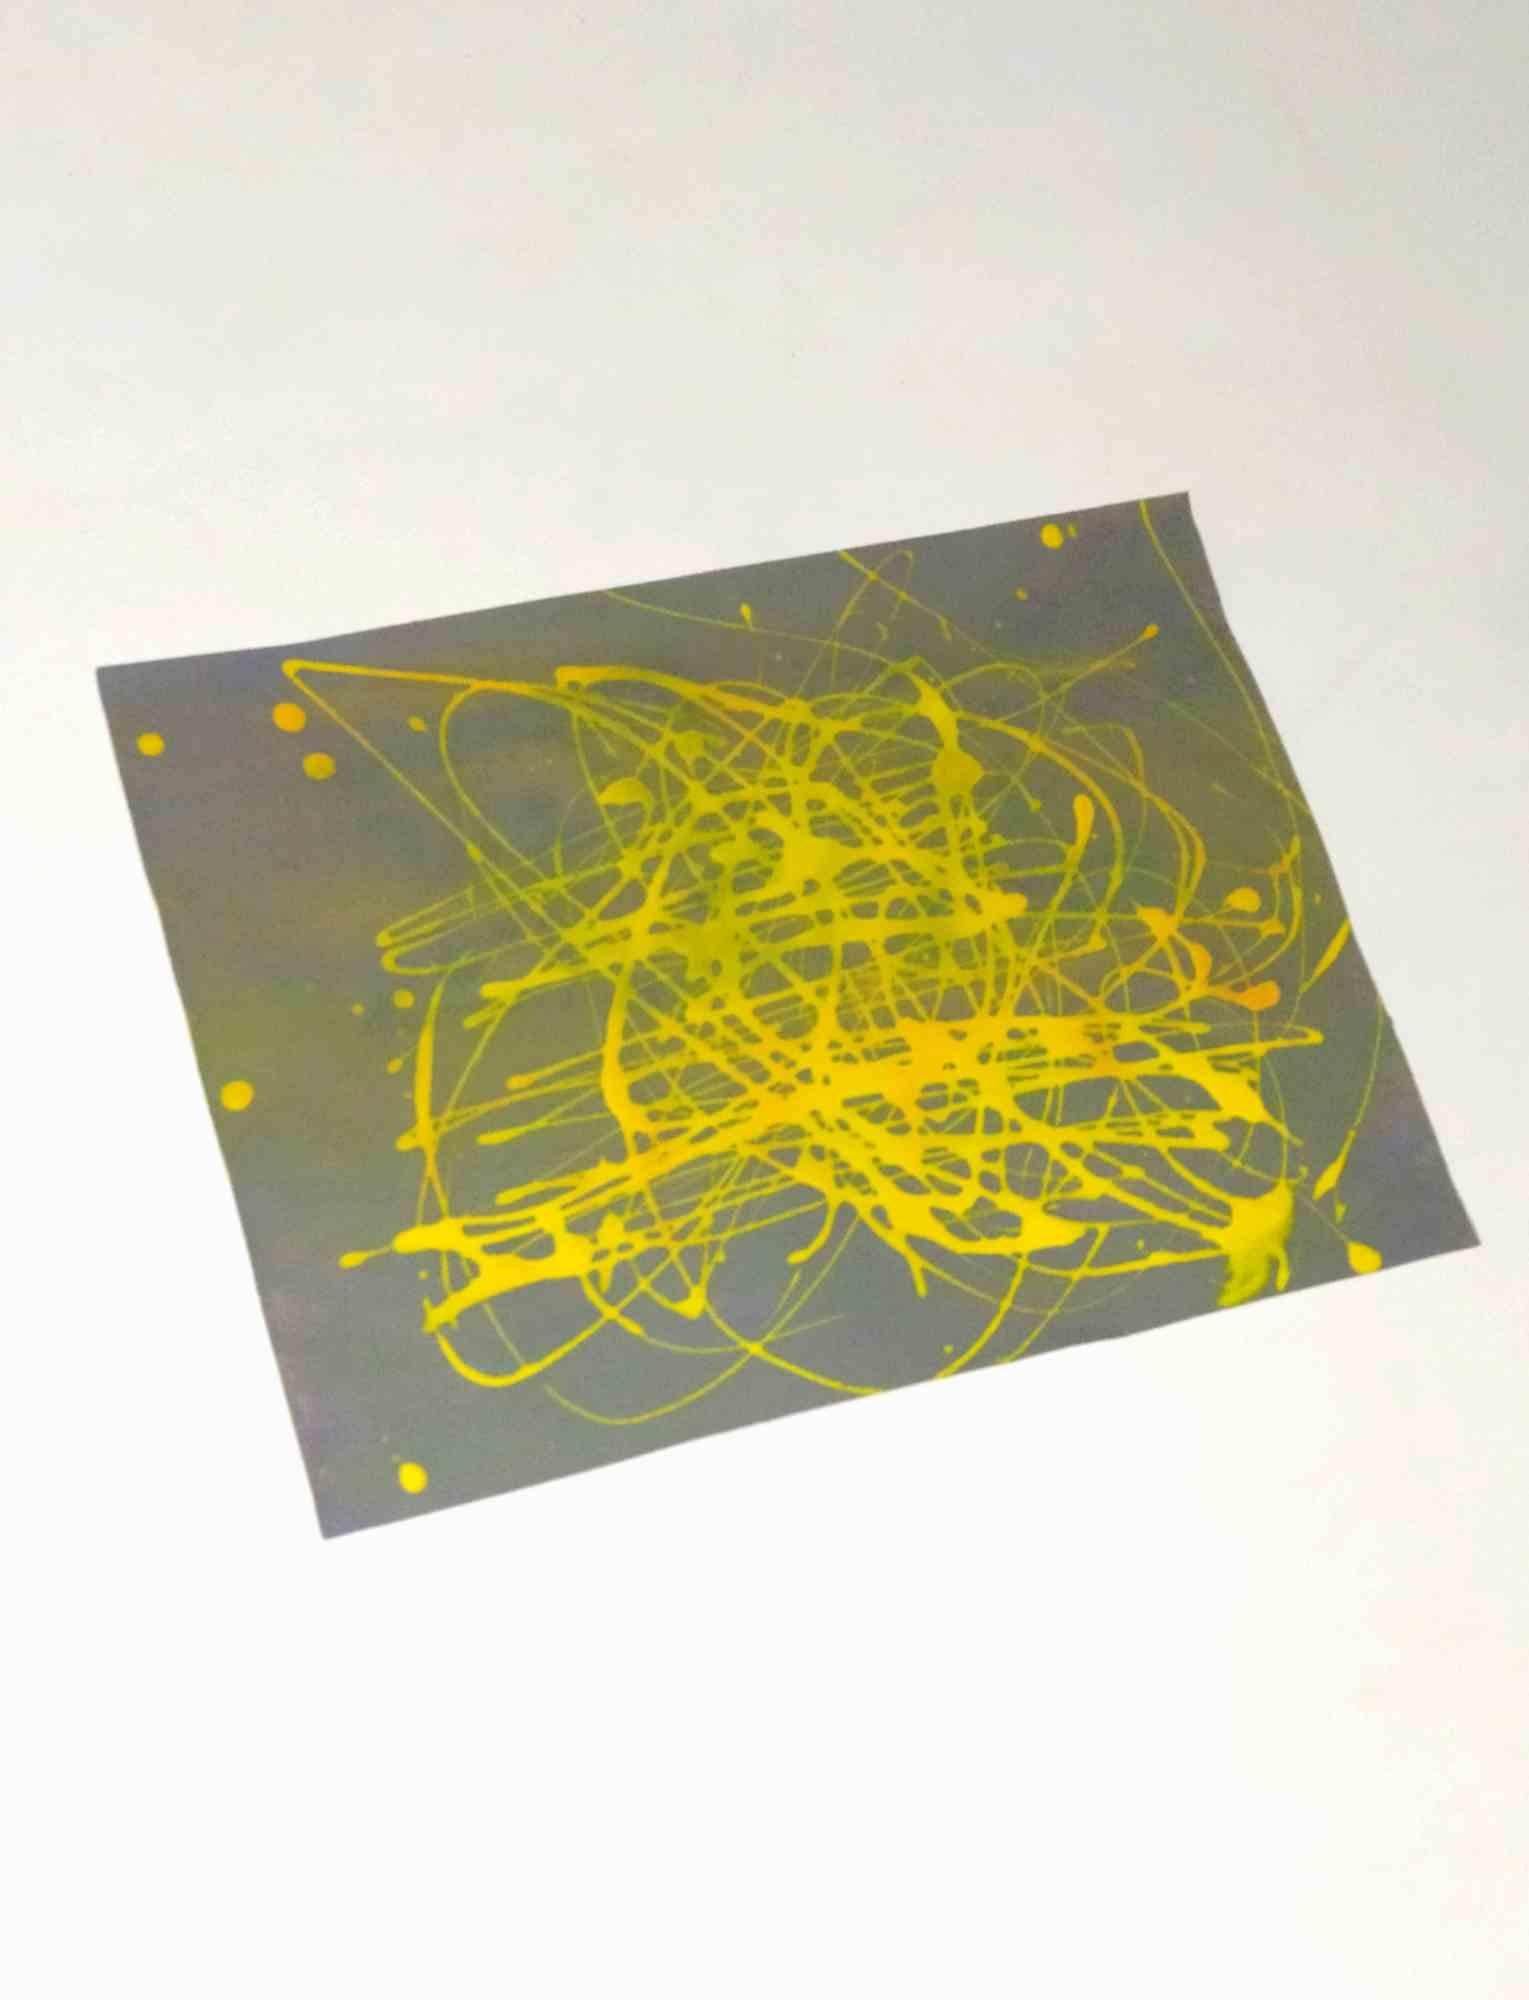 Dissolvenze - Tempera sur papier - 2018 - Painting de Contempologyc E.M.